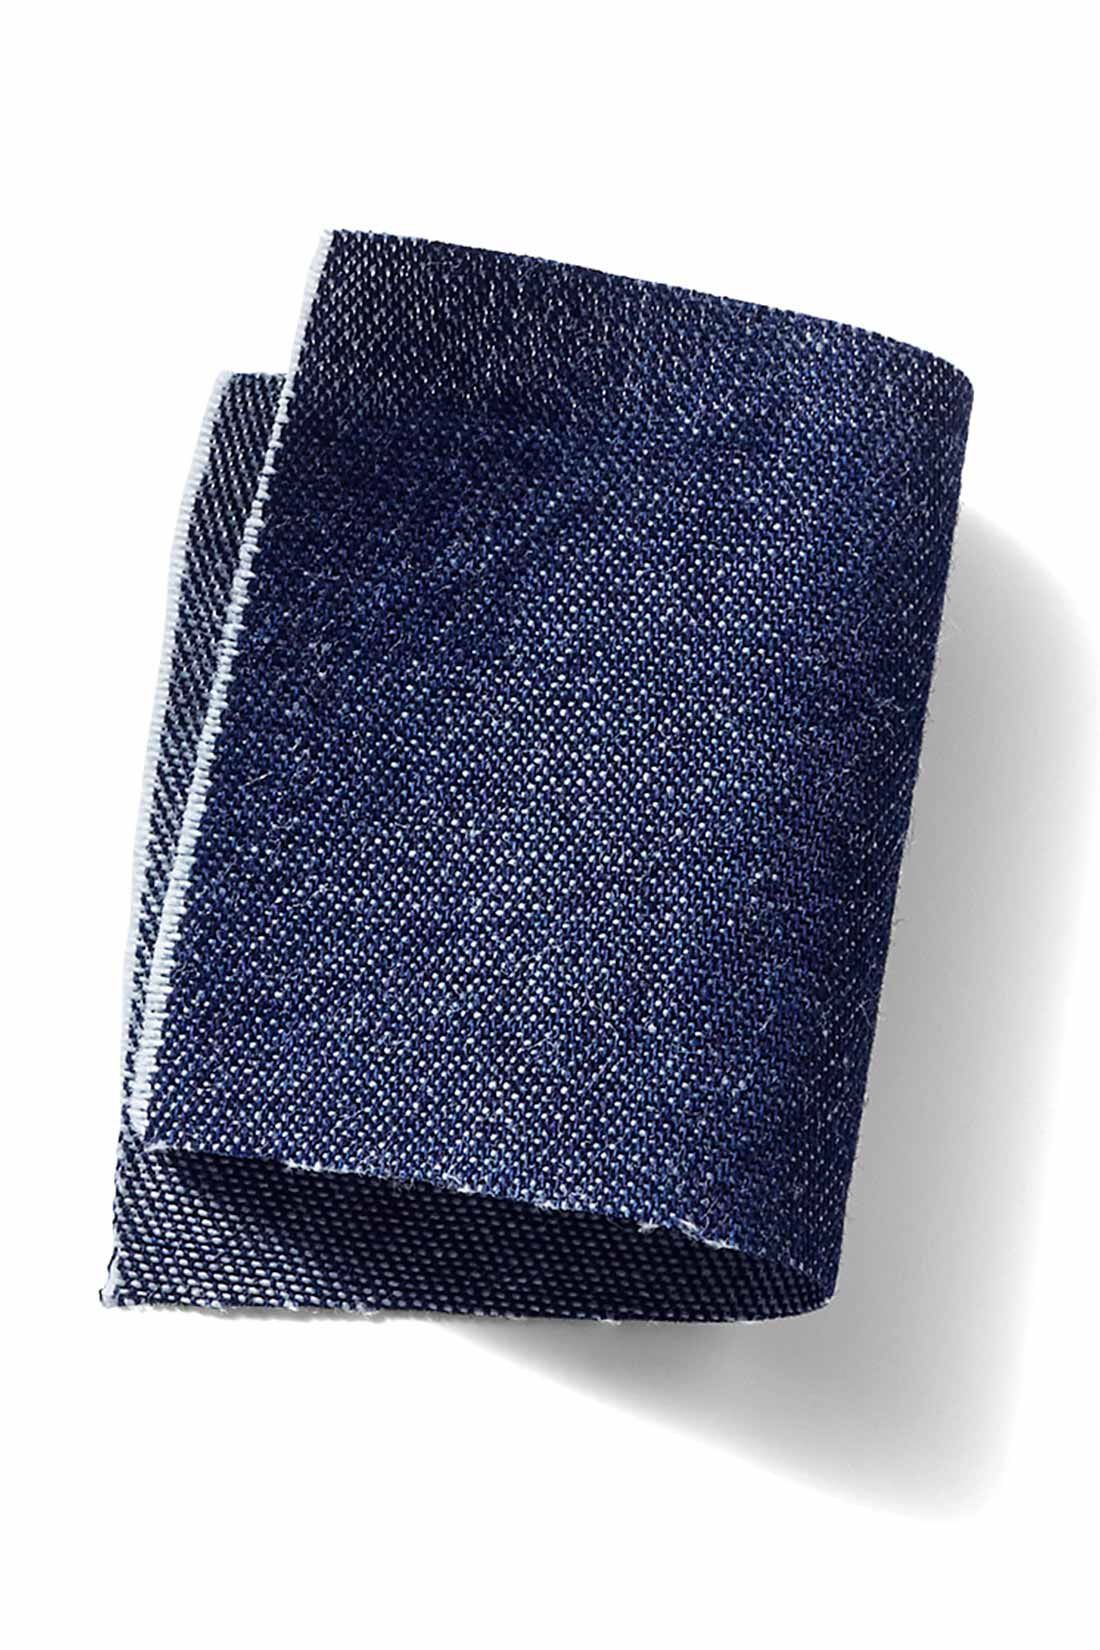 MEDE19F|MEDE19F　前後で着られるサージカルデニムワンピース〈ブルー〉|綿100％のライトオンスデニムで、シーズンレスに着られます。